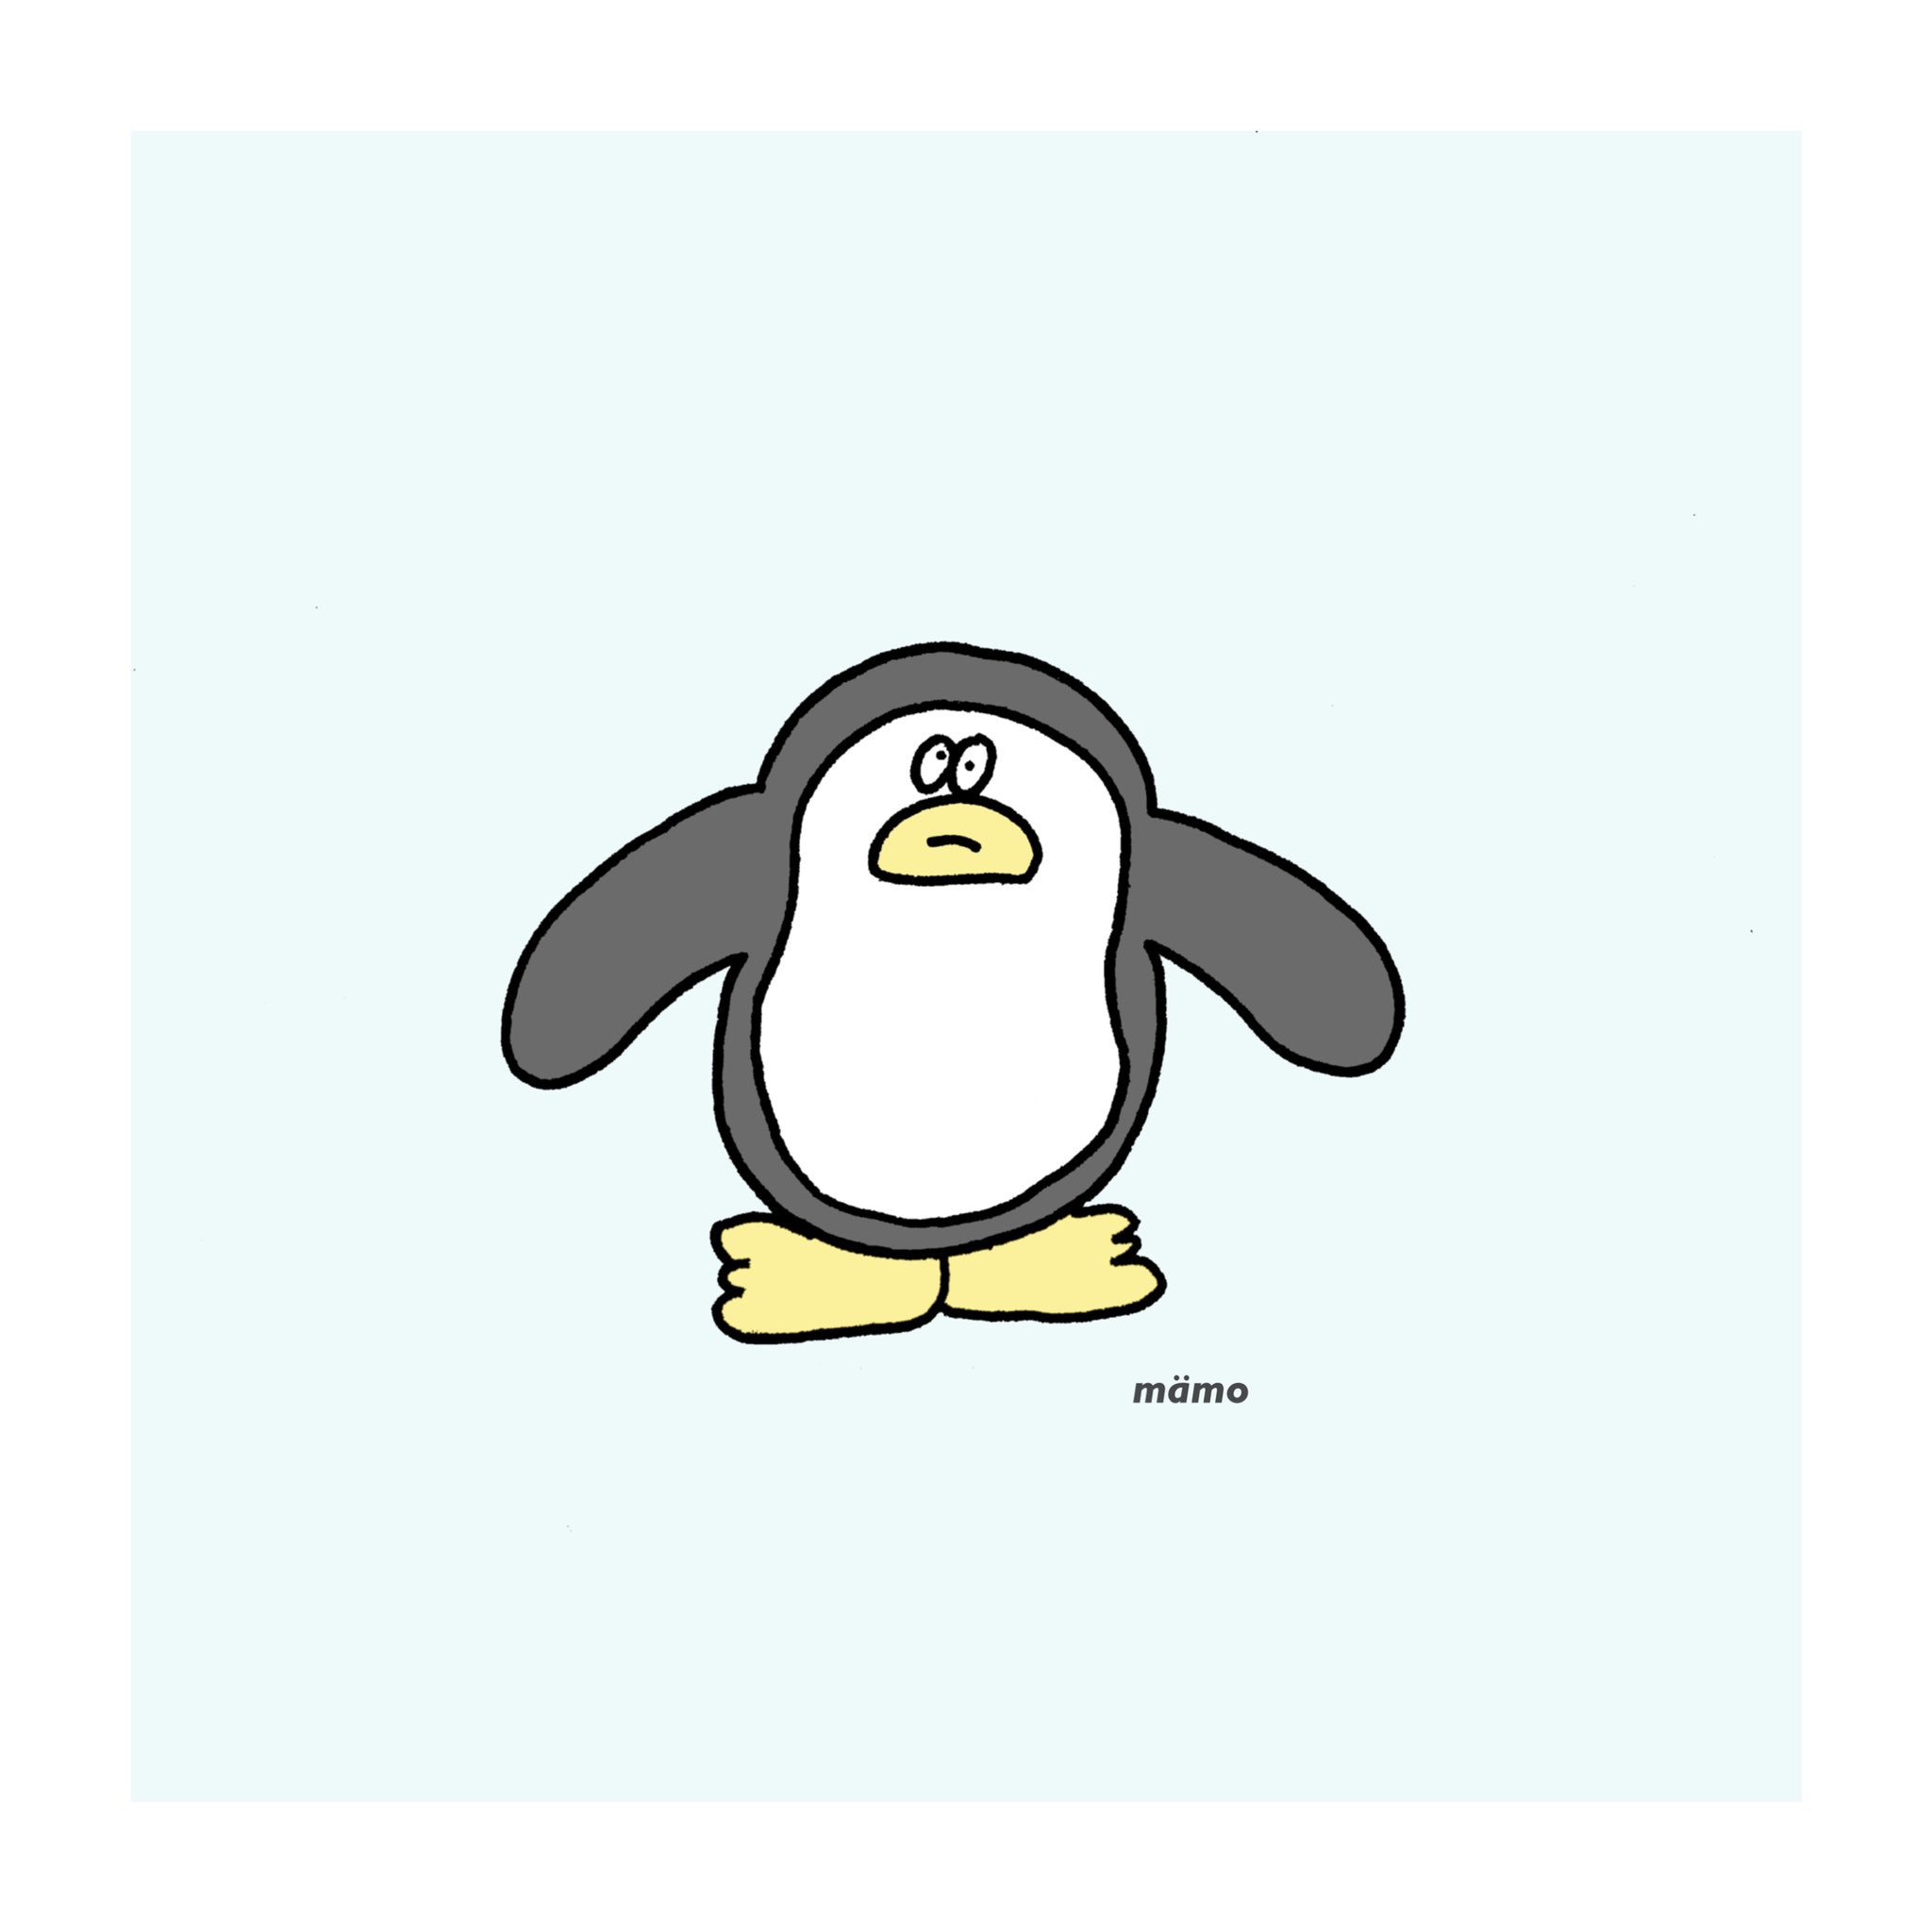 Mamo V Twitter ゆるいペンギン くそゆるいペンギン イラスト シュール 絵描きさんと繋がりたい T Co Z47m1tcnsv Twitter